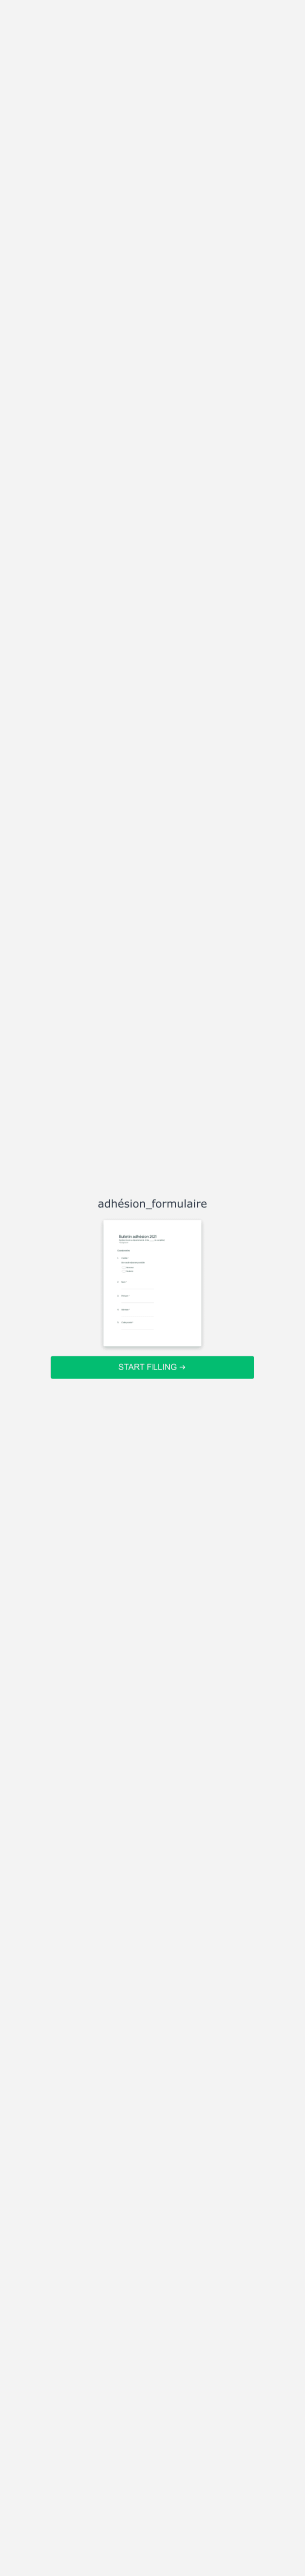 Adhésion_formulaire Form Template